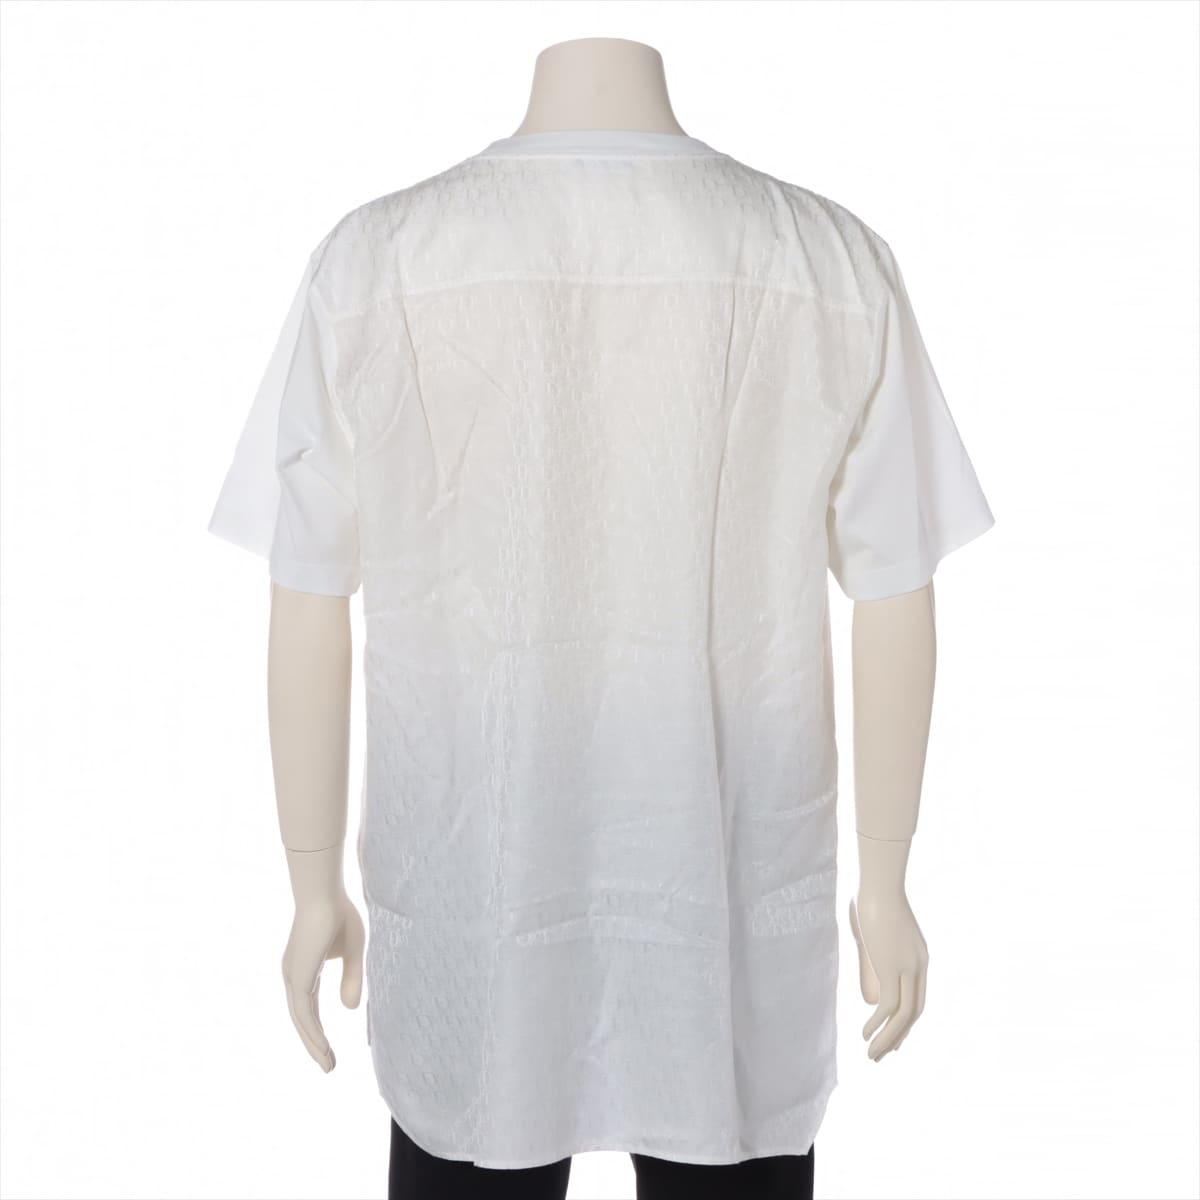 ディオール オブリーク コットン×シルク Tシャツ XL メンズ ホワイト  143J647A0677 フロントインサーション